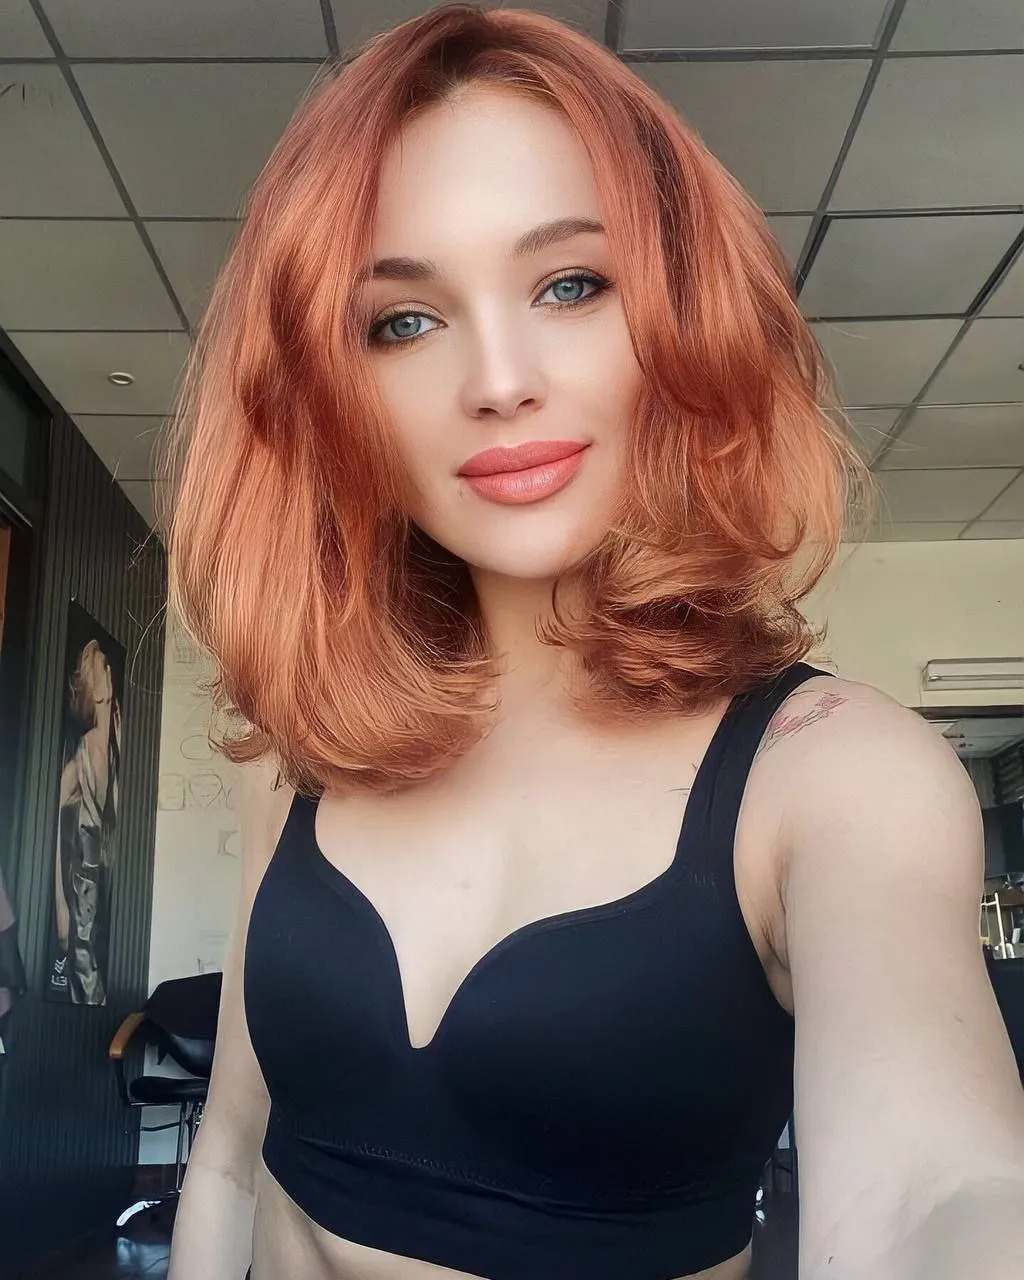 Mariya russian singles photos